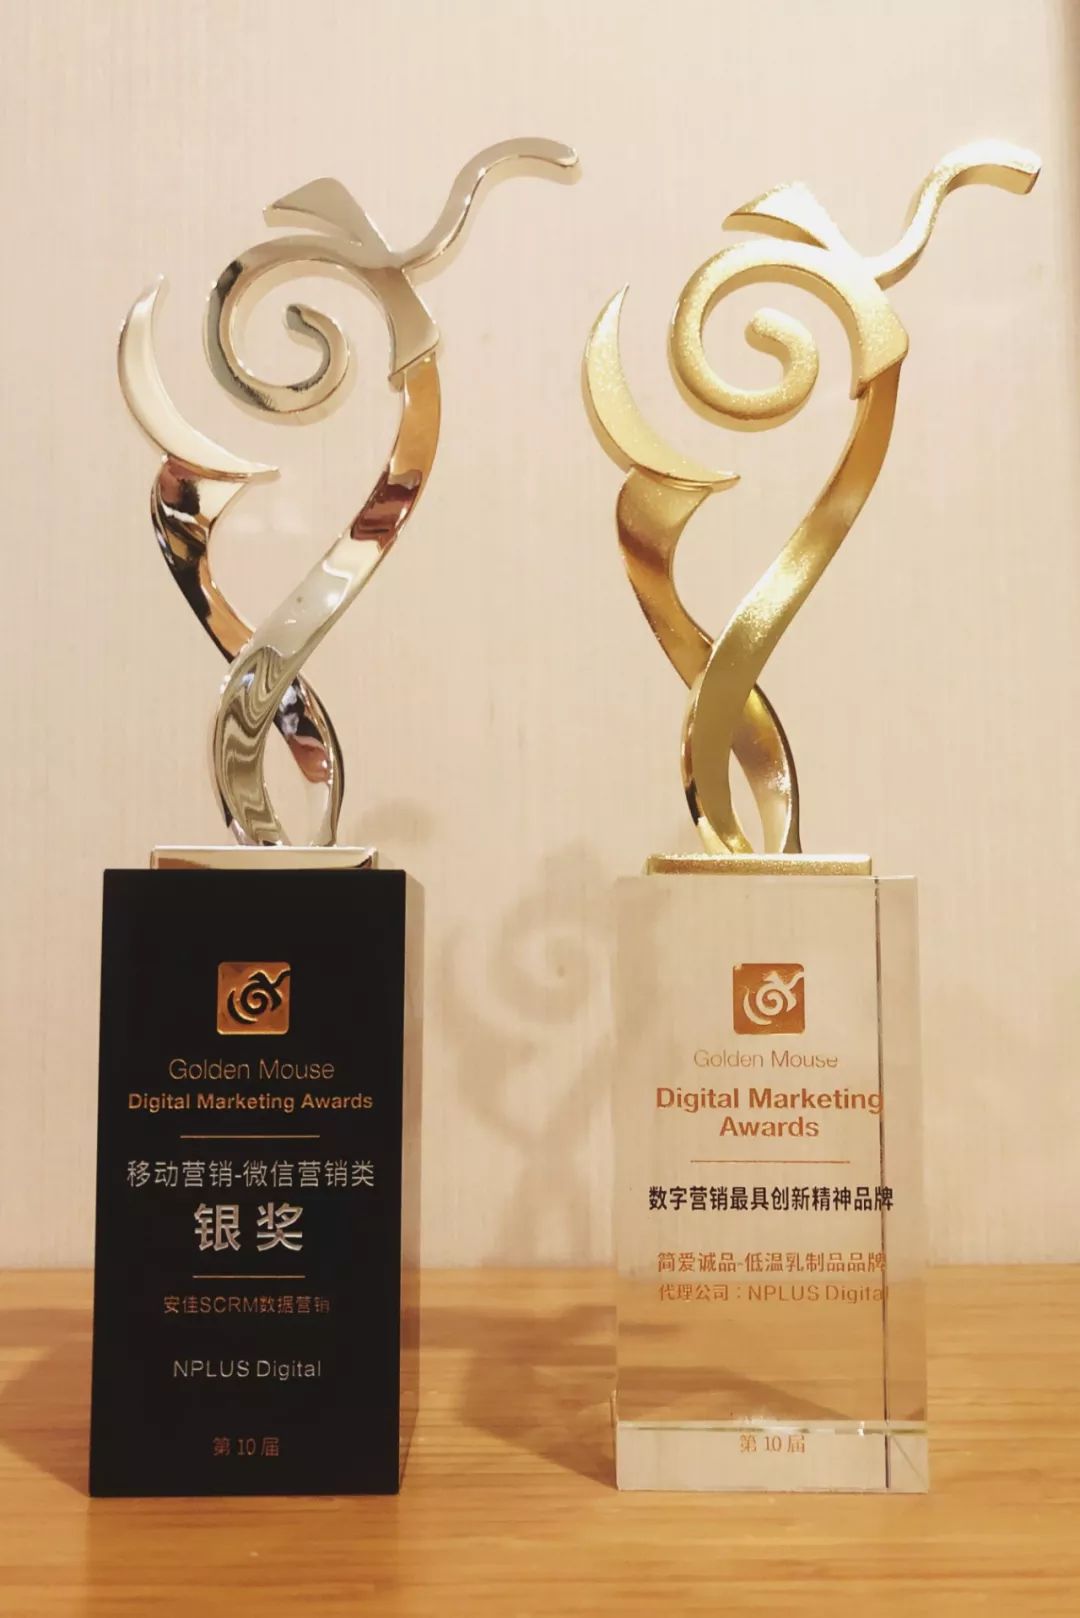 PLUS Digital 斩获第十届金鼠标数字营销大赛